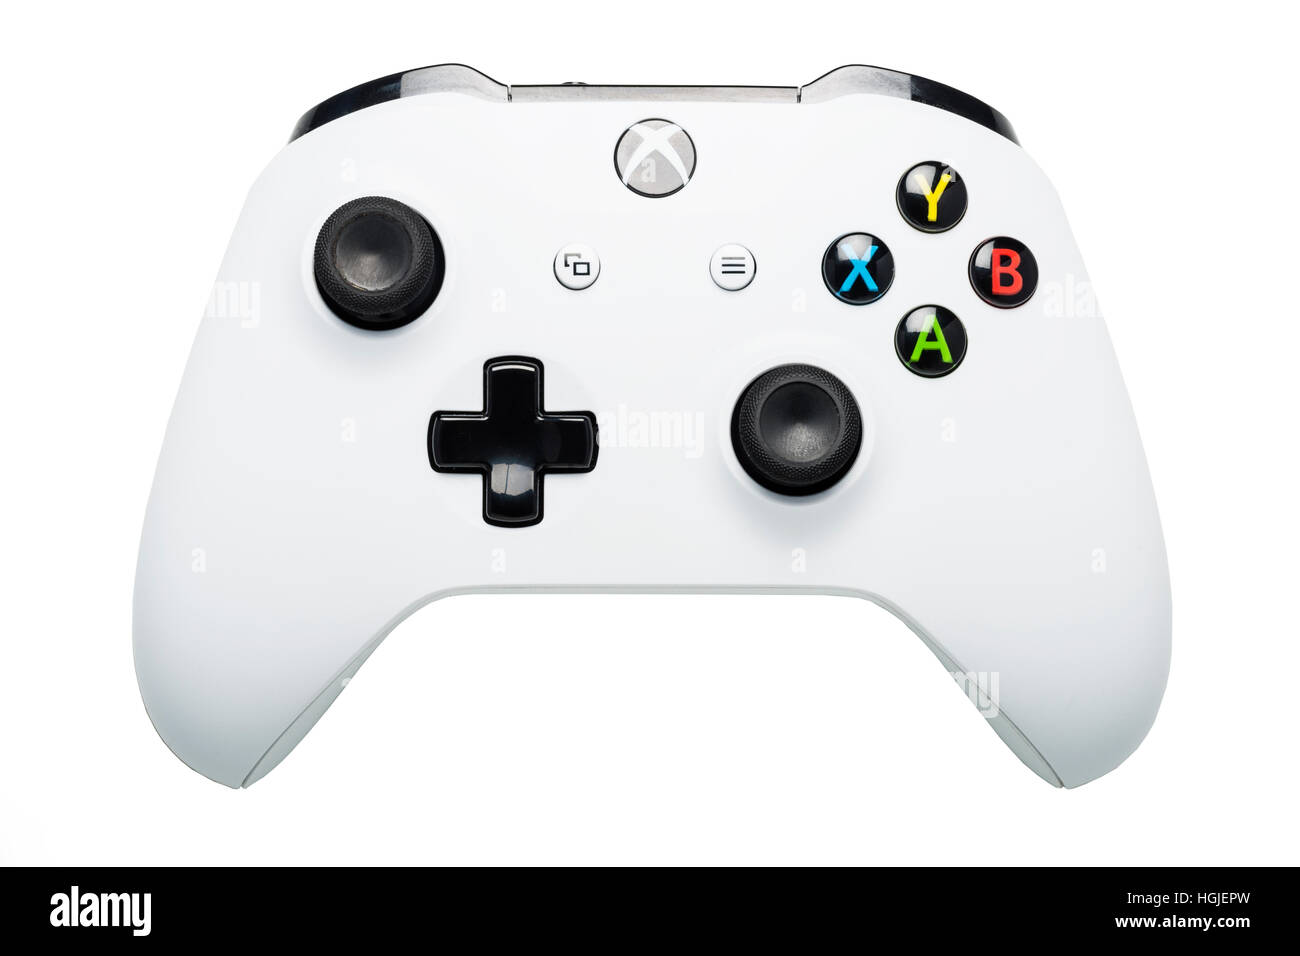 Un controlador de juegos Xbox uno s sobre un fondo blanco. Foto de stock